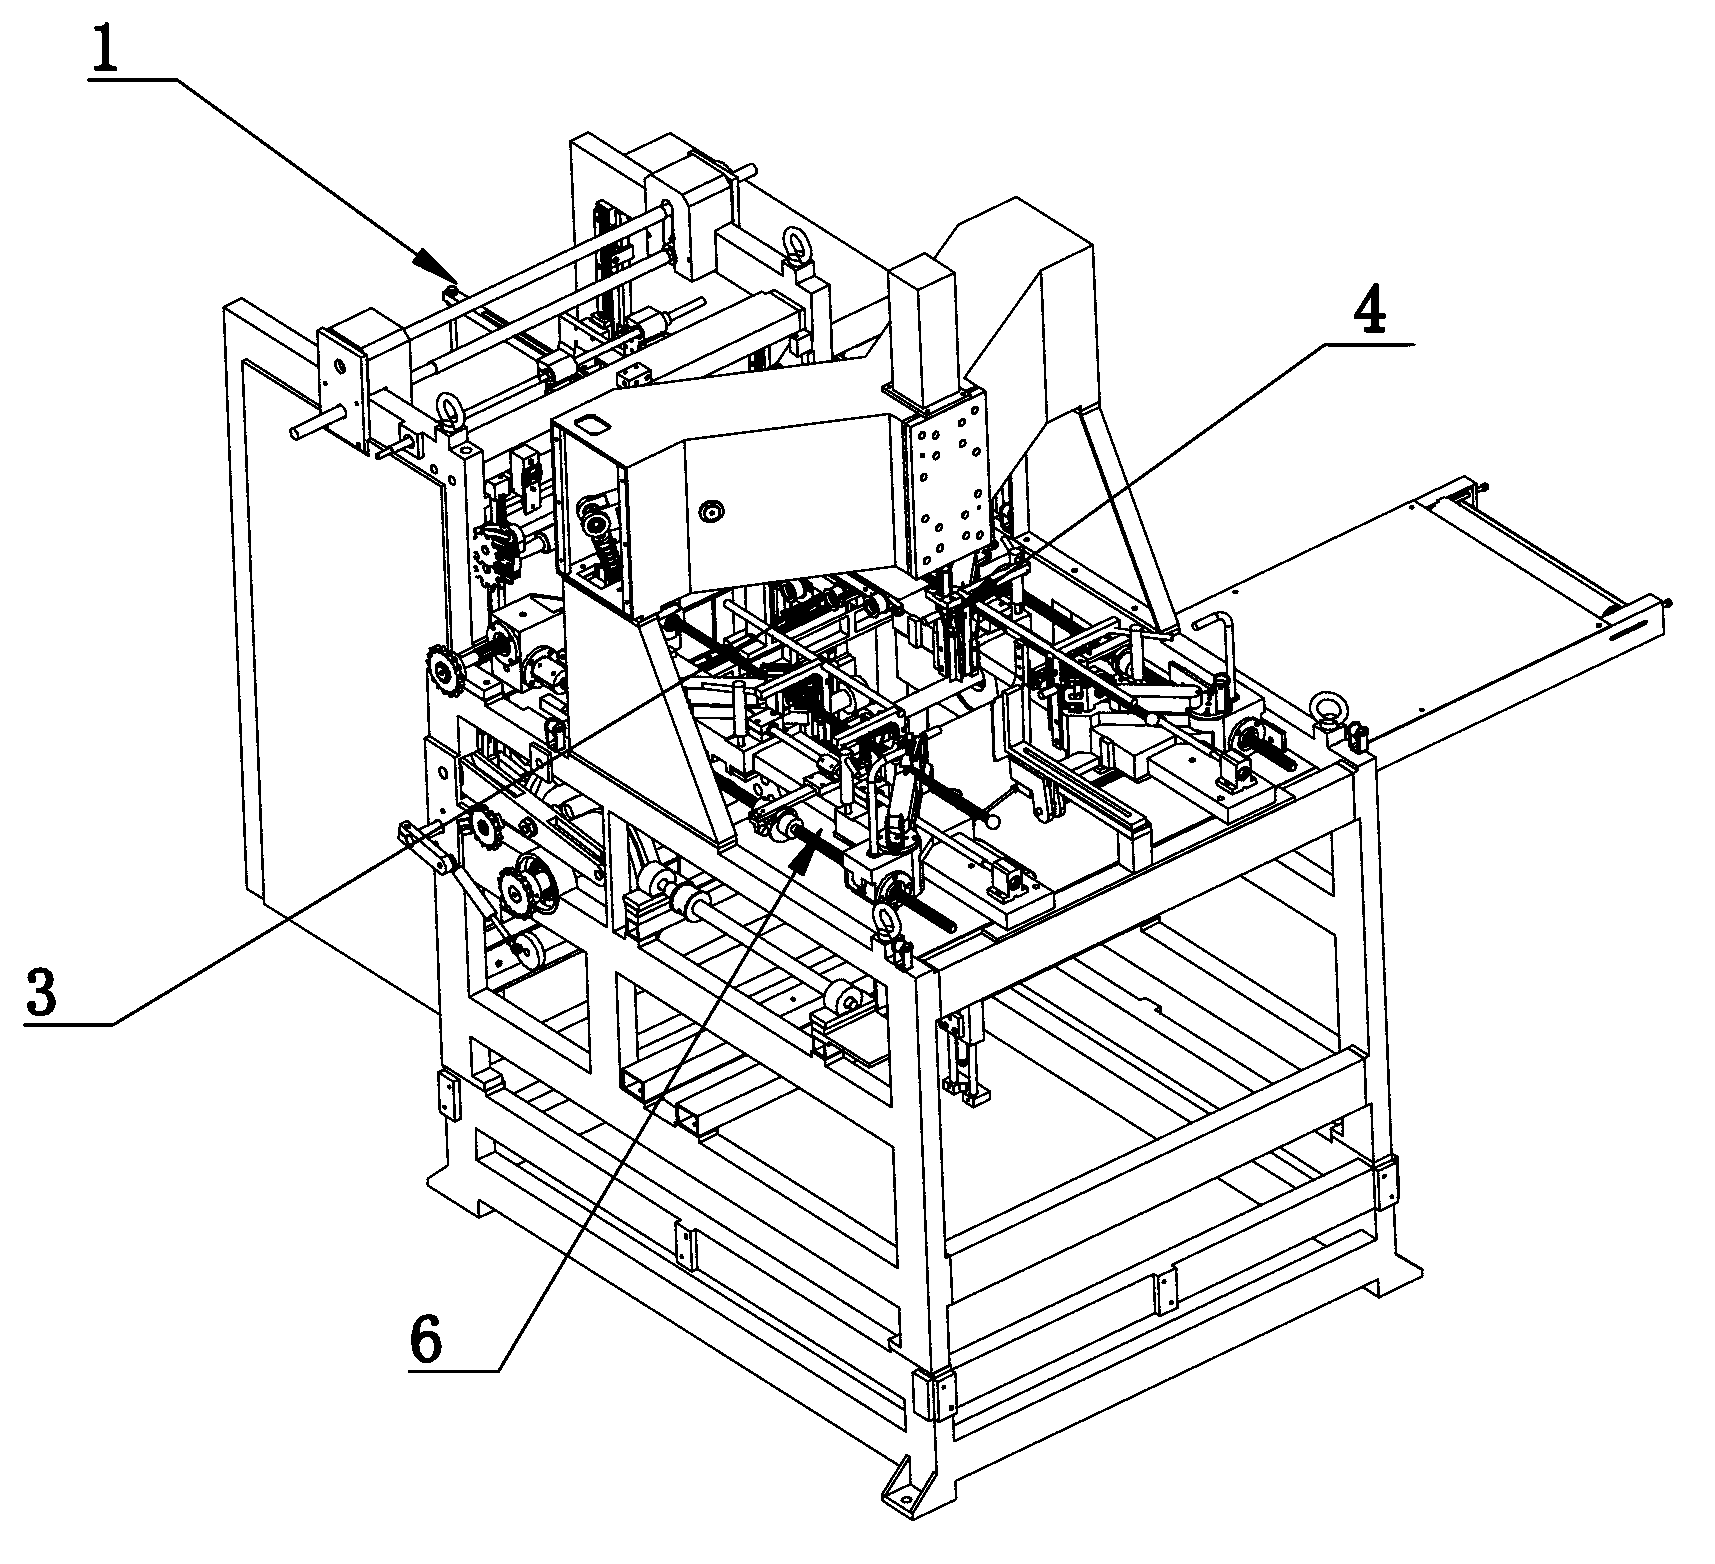 Inner box forming machine